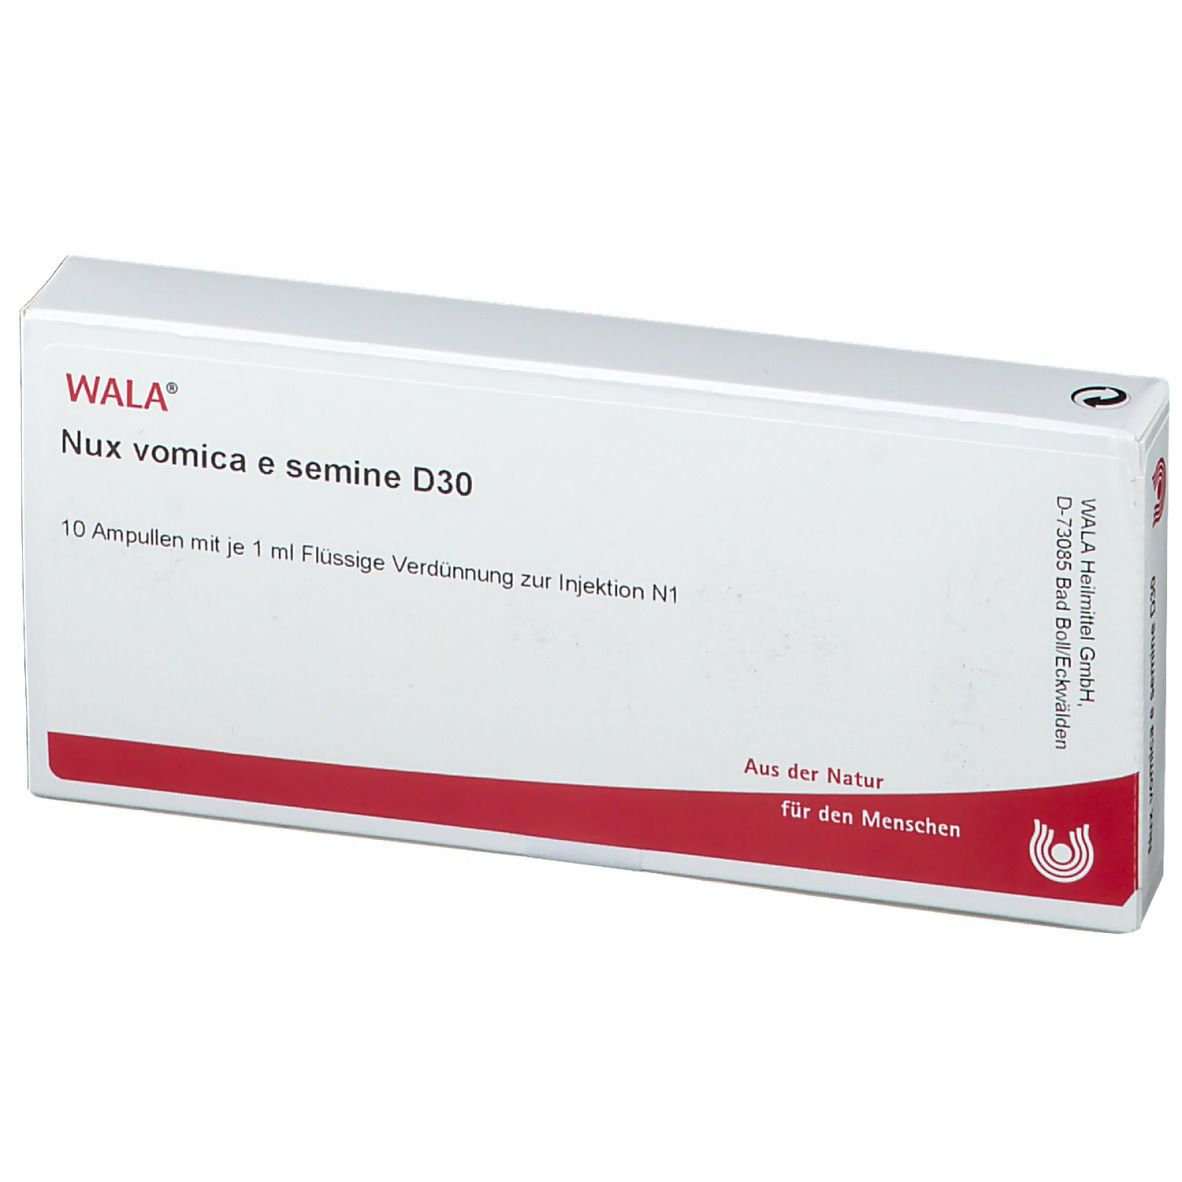 WALA® Nux vomica e semine D 30